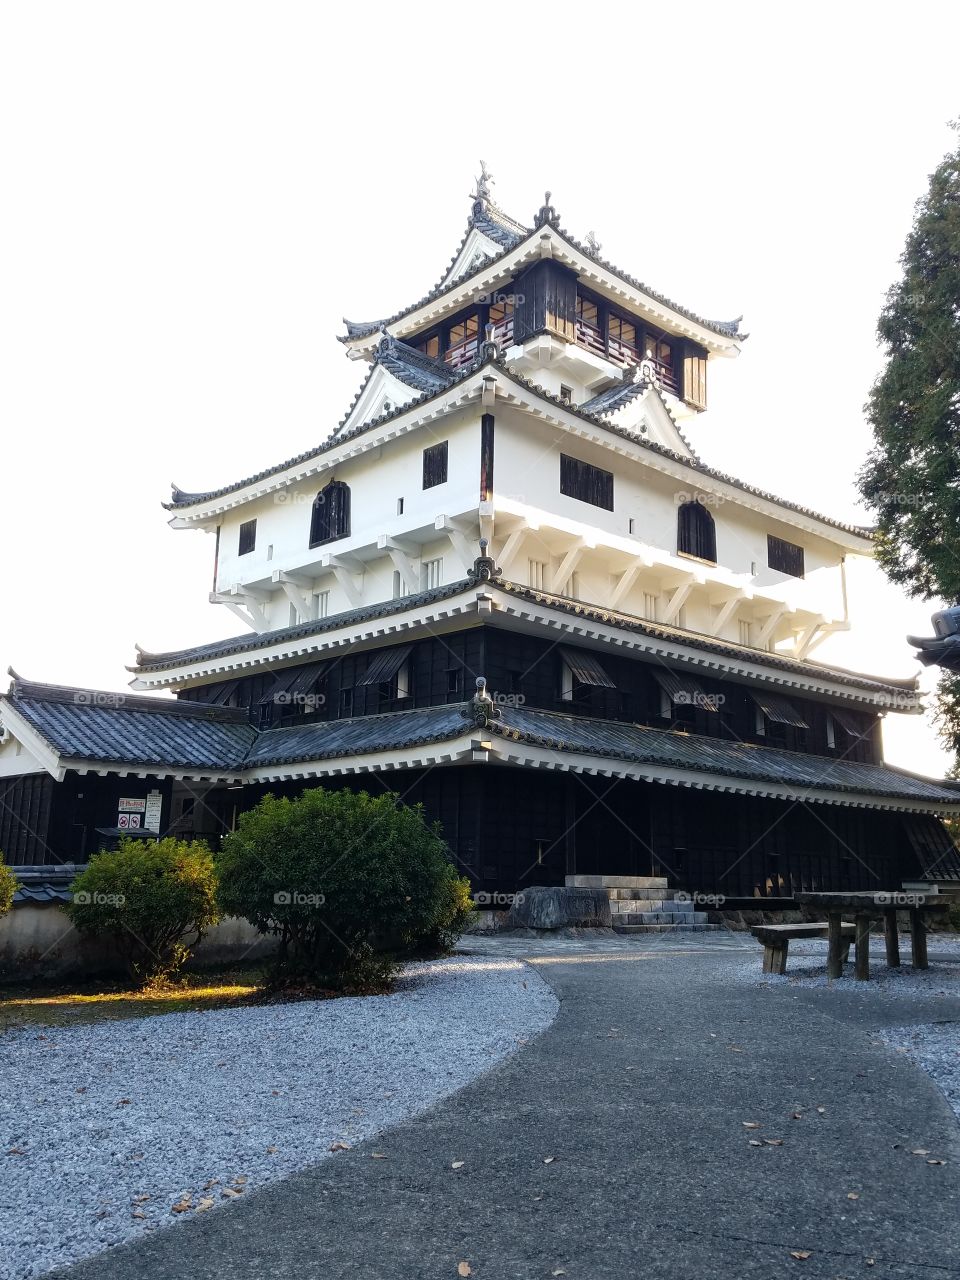 Japanese palace